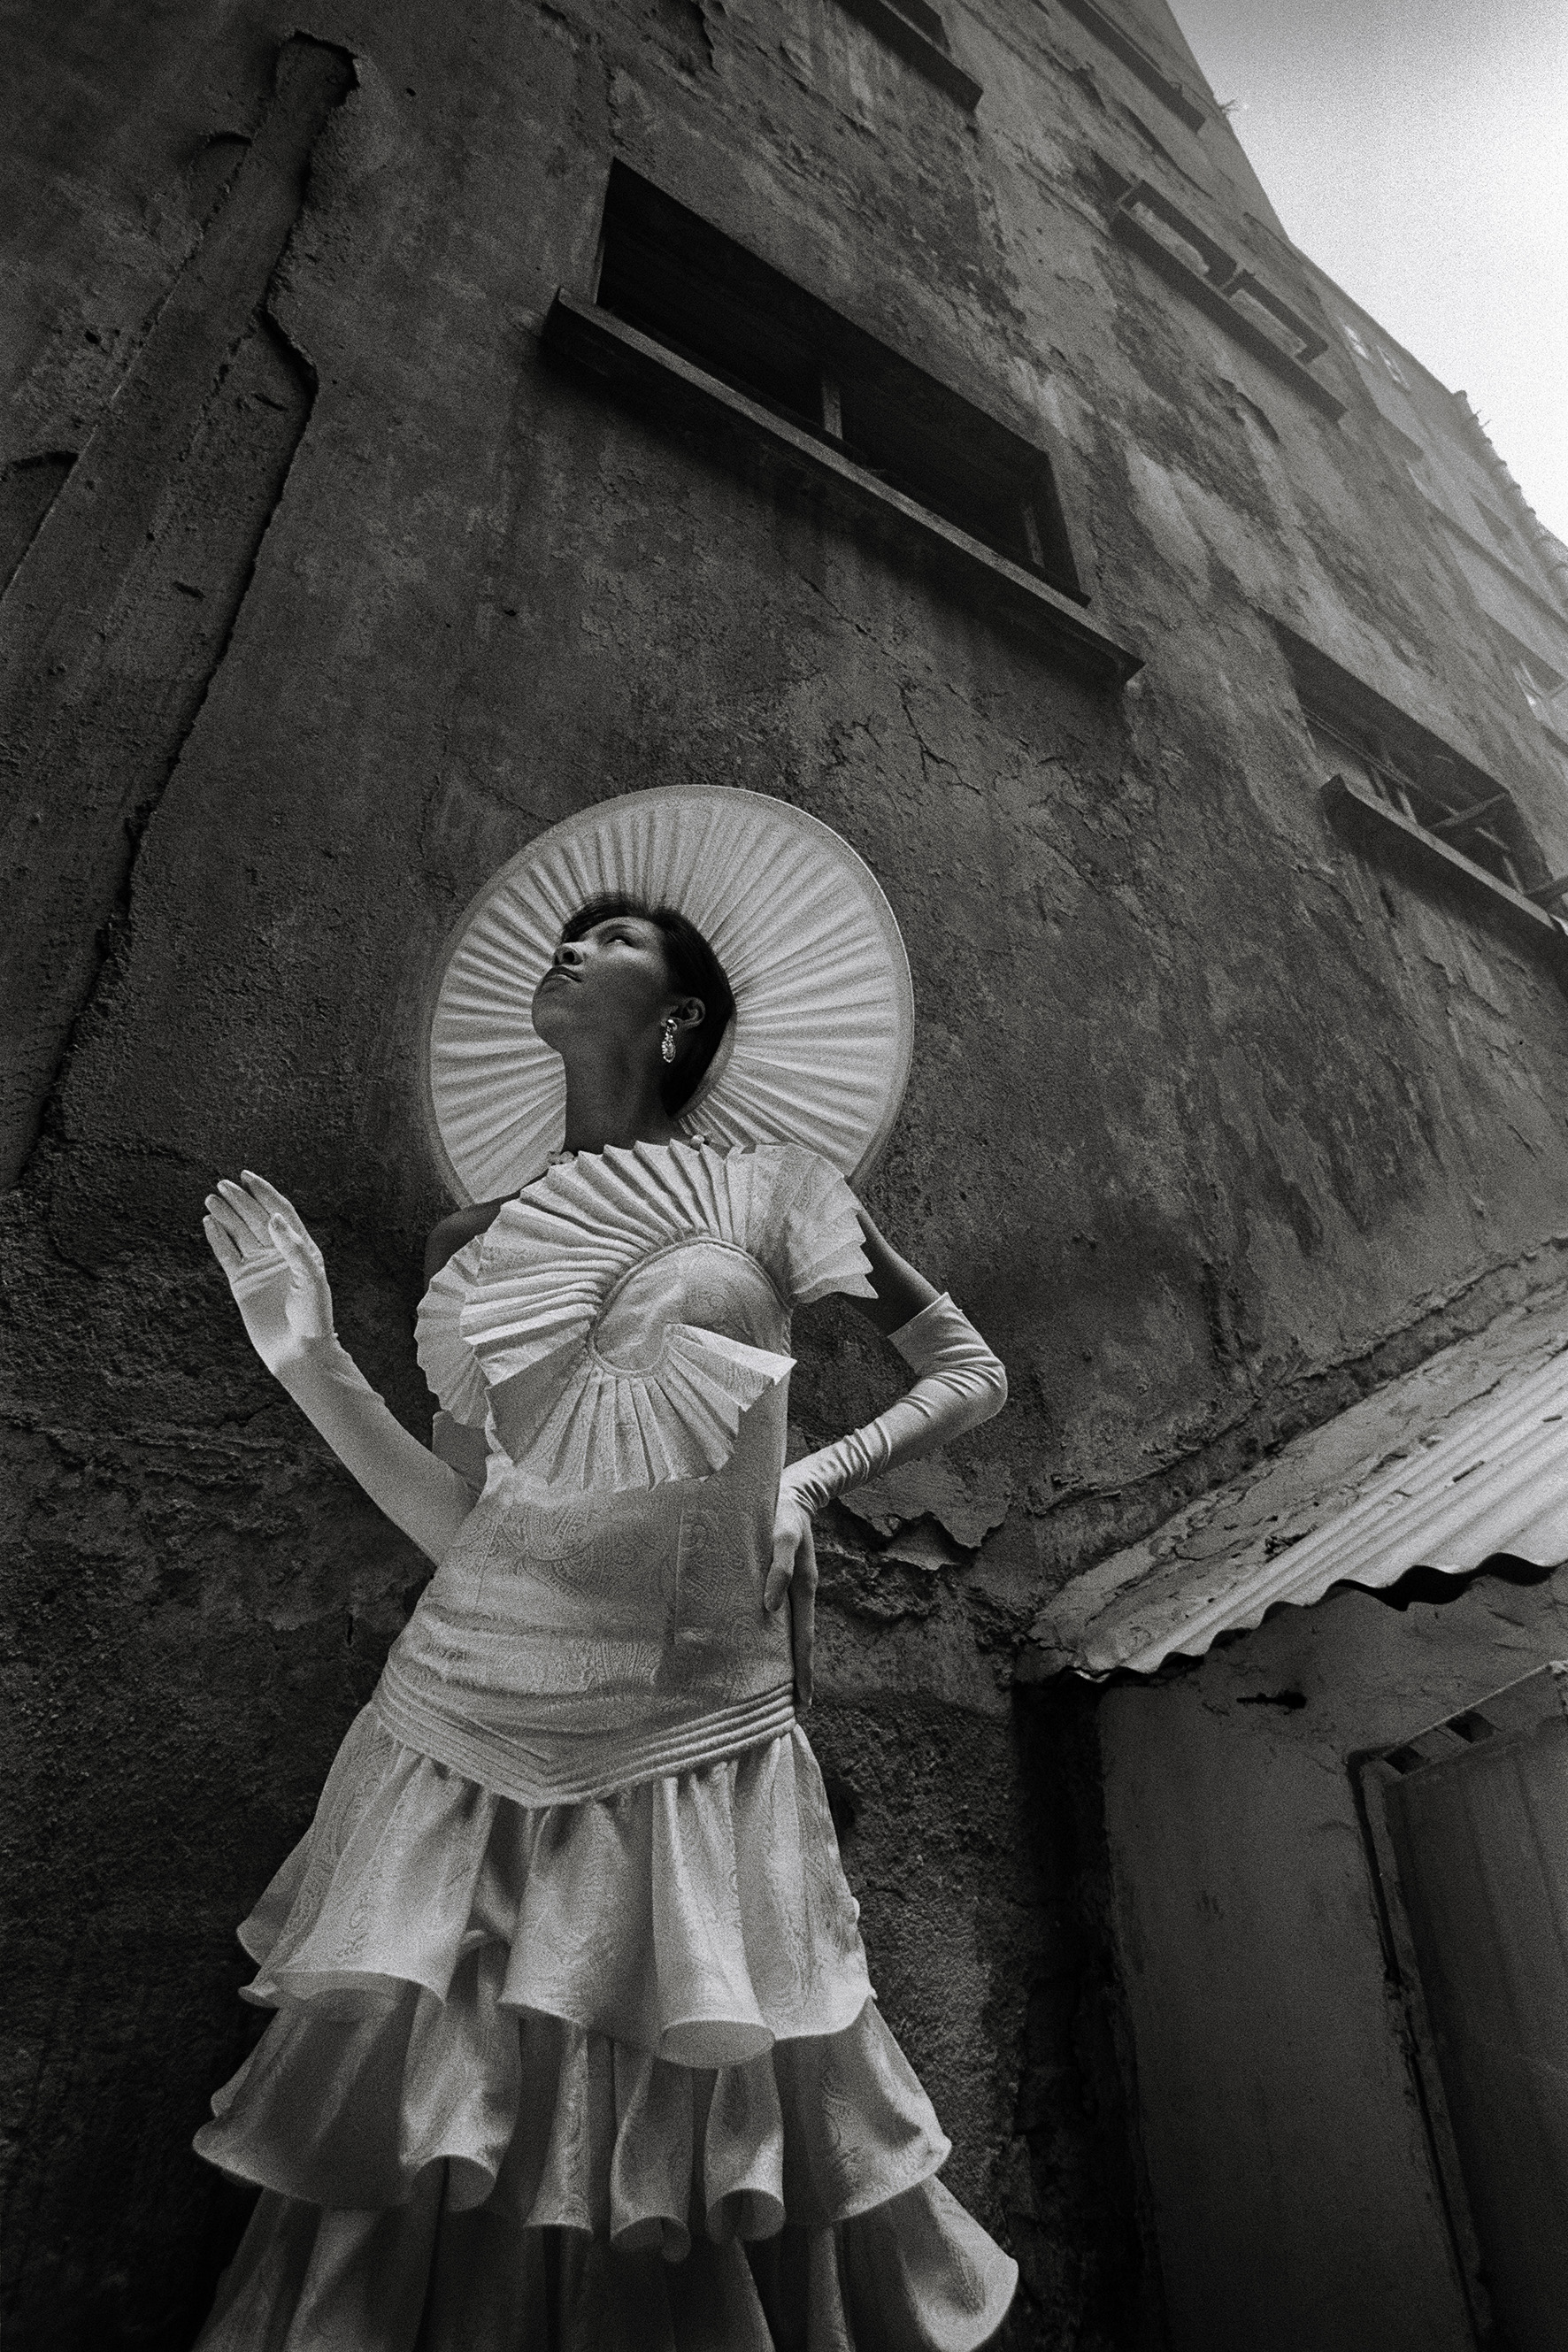 zhang haier zeng yan modeling fashion 1987 photography of china - Zhang Hai'er | Black and white art photography | Fashion photography | Women | France | China | Portrait photography - Zhang Hai'er 张海儿